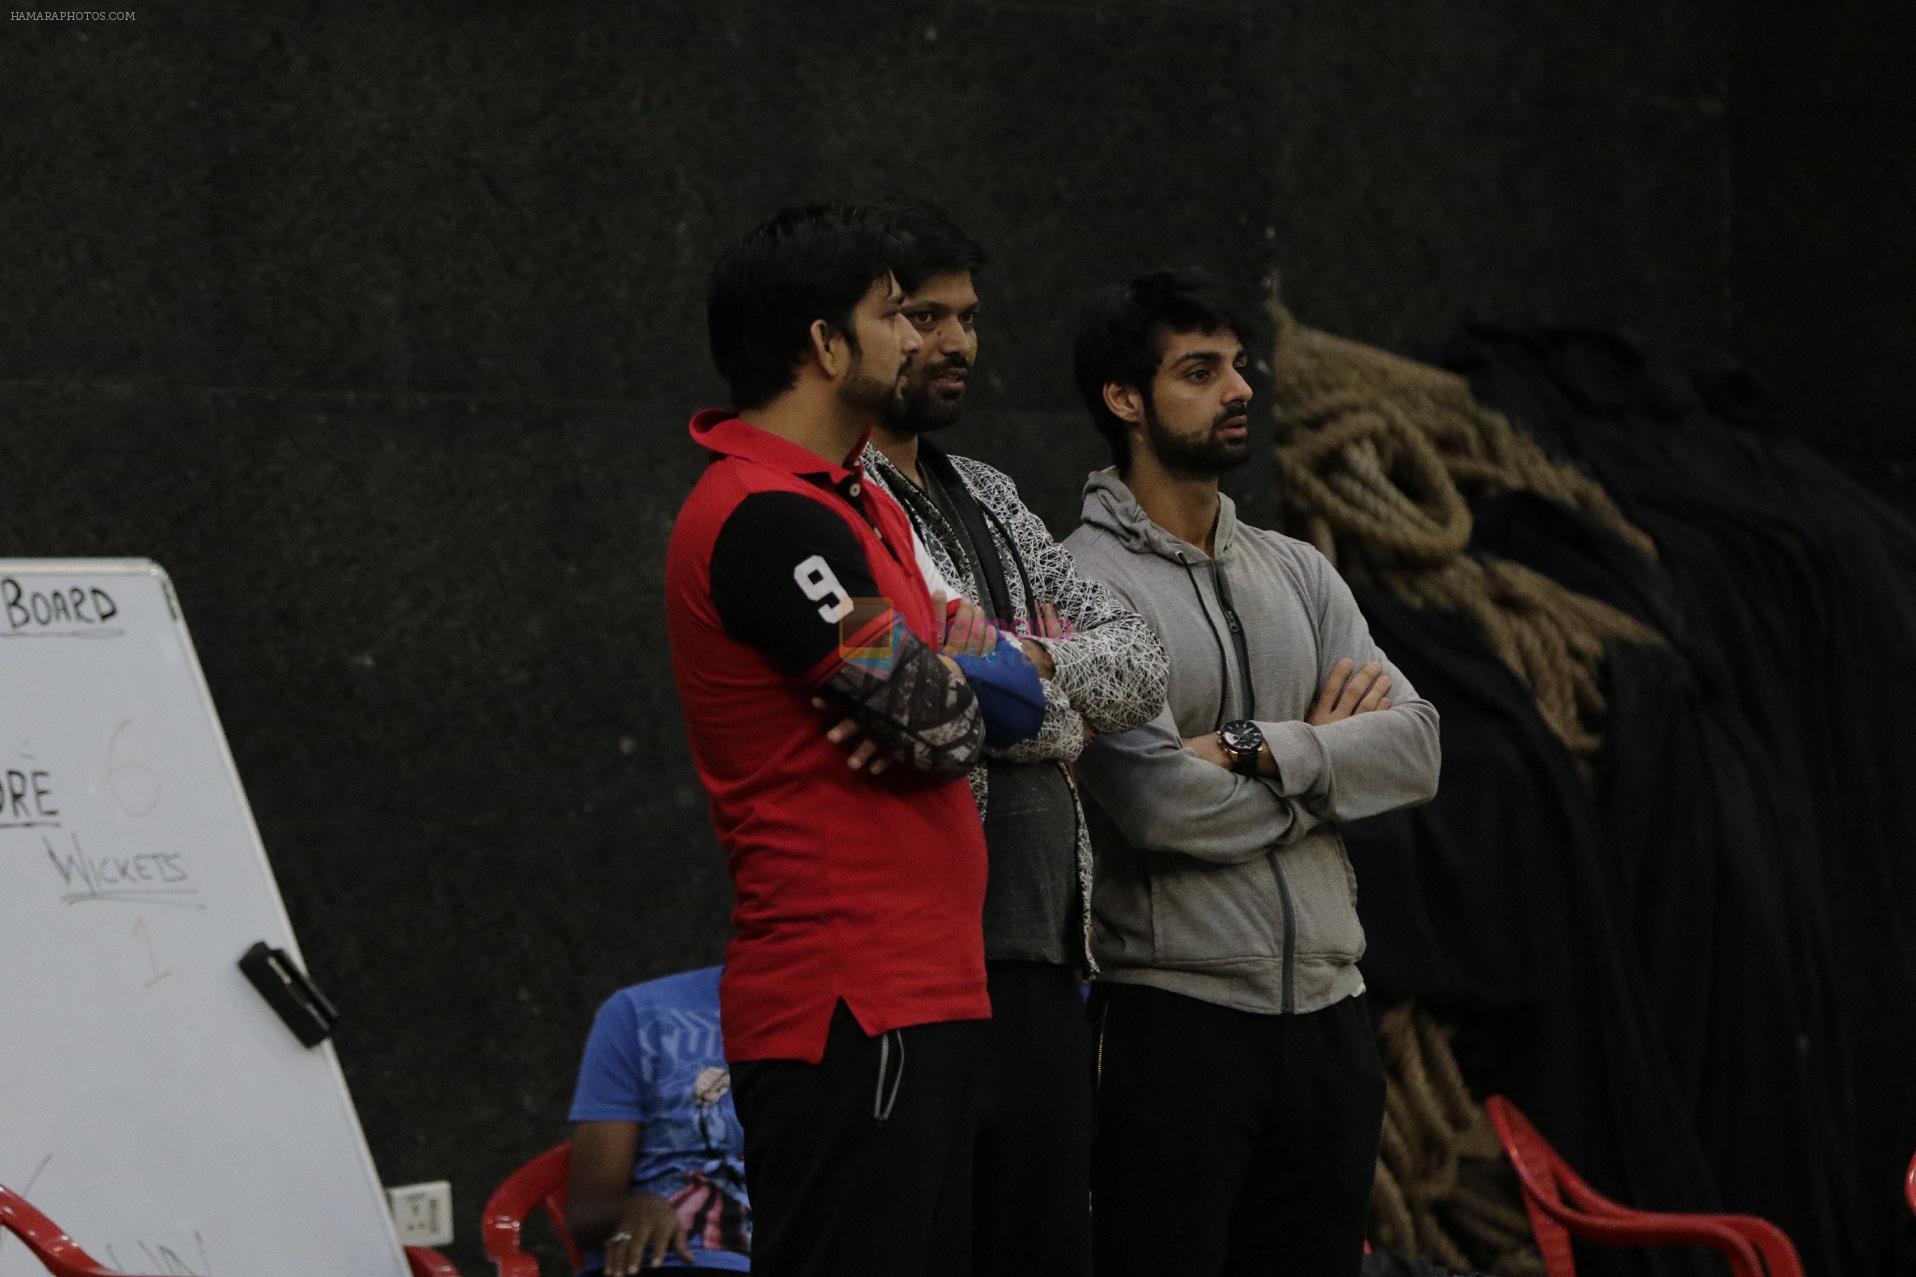 Aadesh Chaudhary,Anand Mishra,Karan wahi at the BCL Season 2 Practice session on 17th Jan 2016